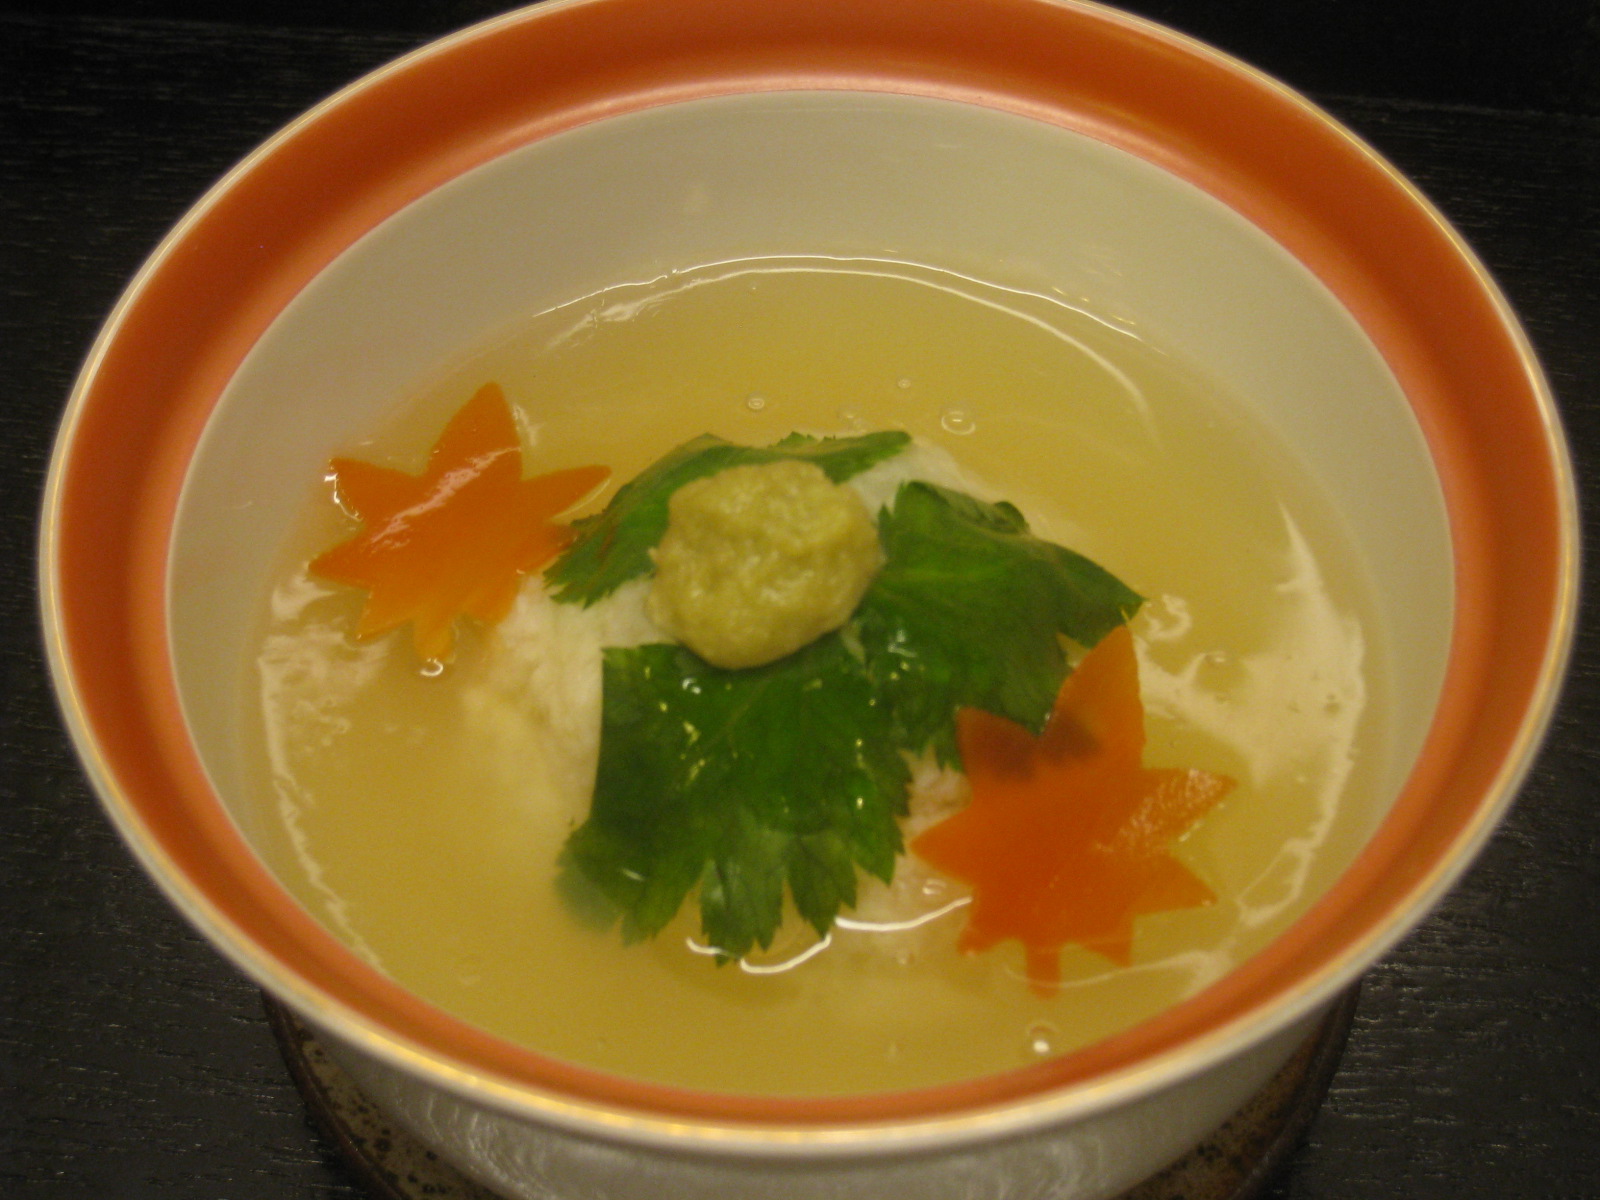 京都の季節料理すっぽん鍋・筍料理・鱧料理の専門店三栄のかぶら蒸し